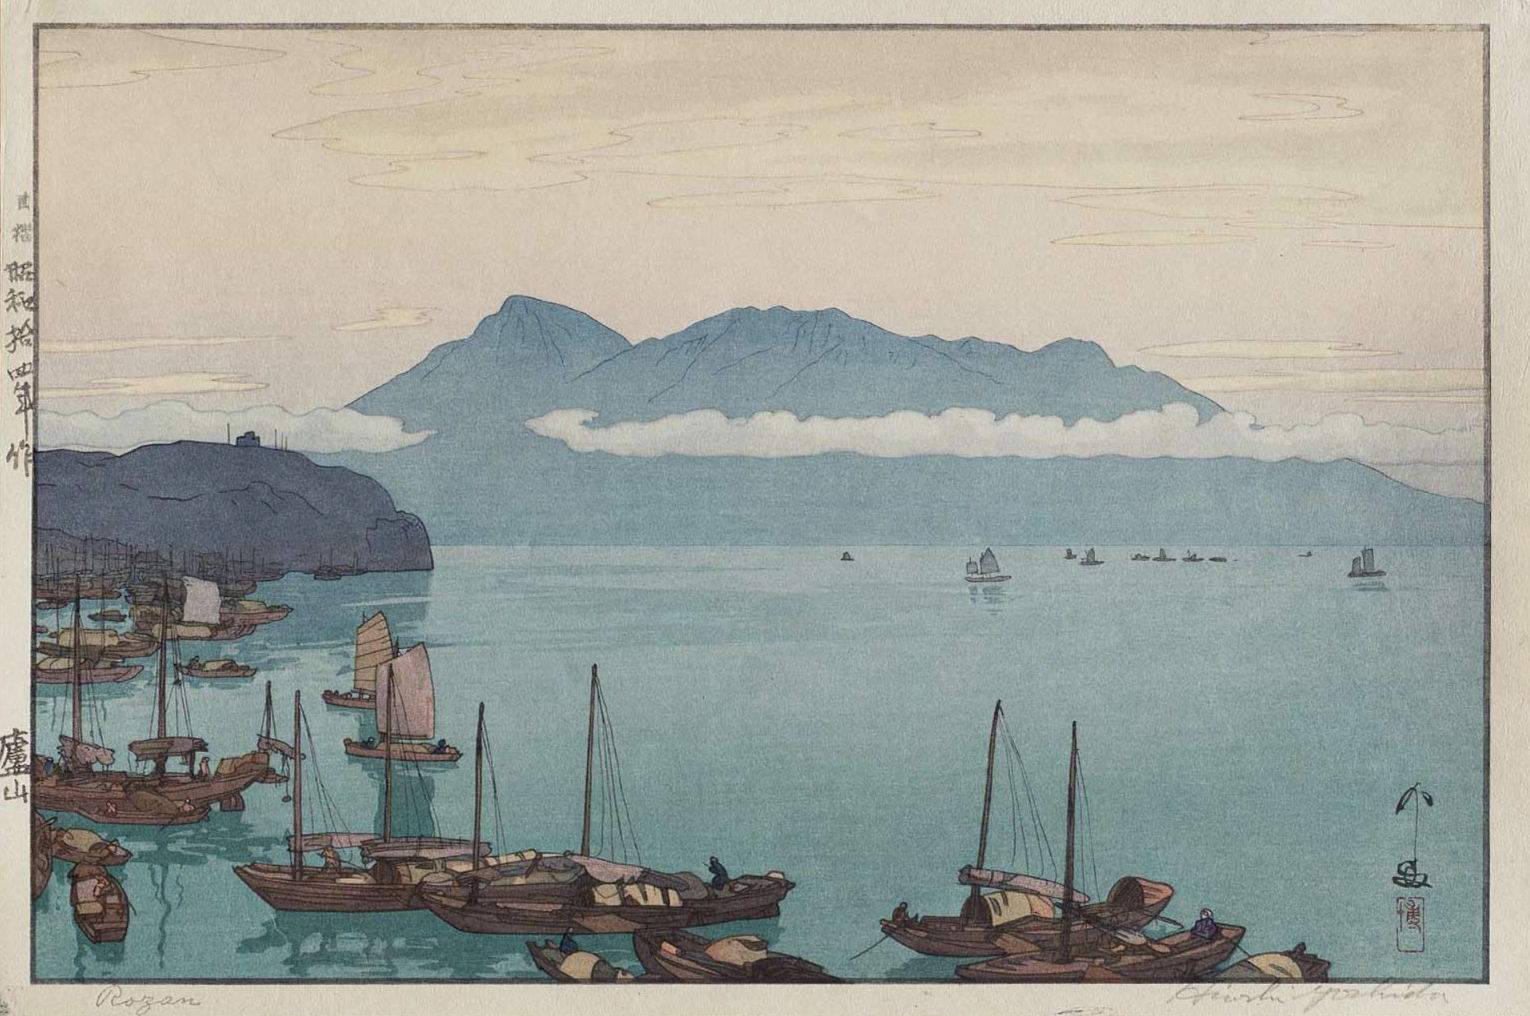 Hiroshi Yoshida “Rozan” 1939 woodblock print